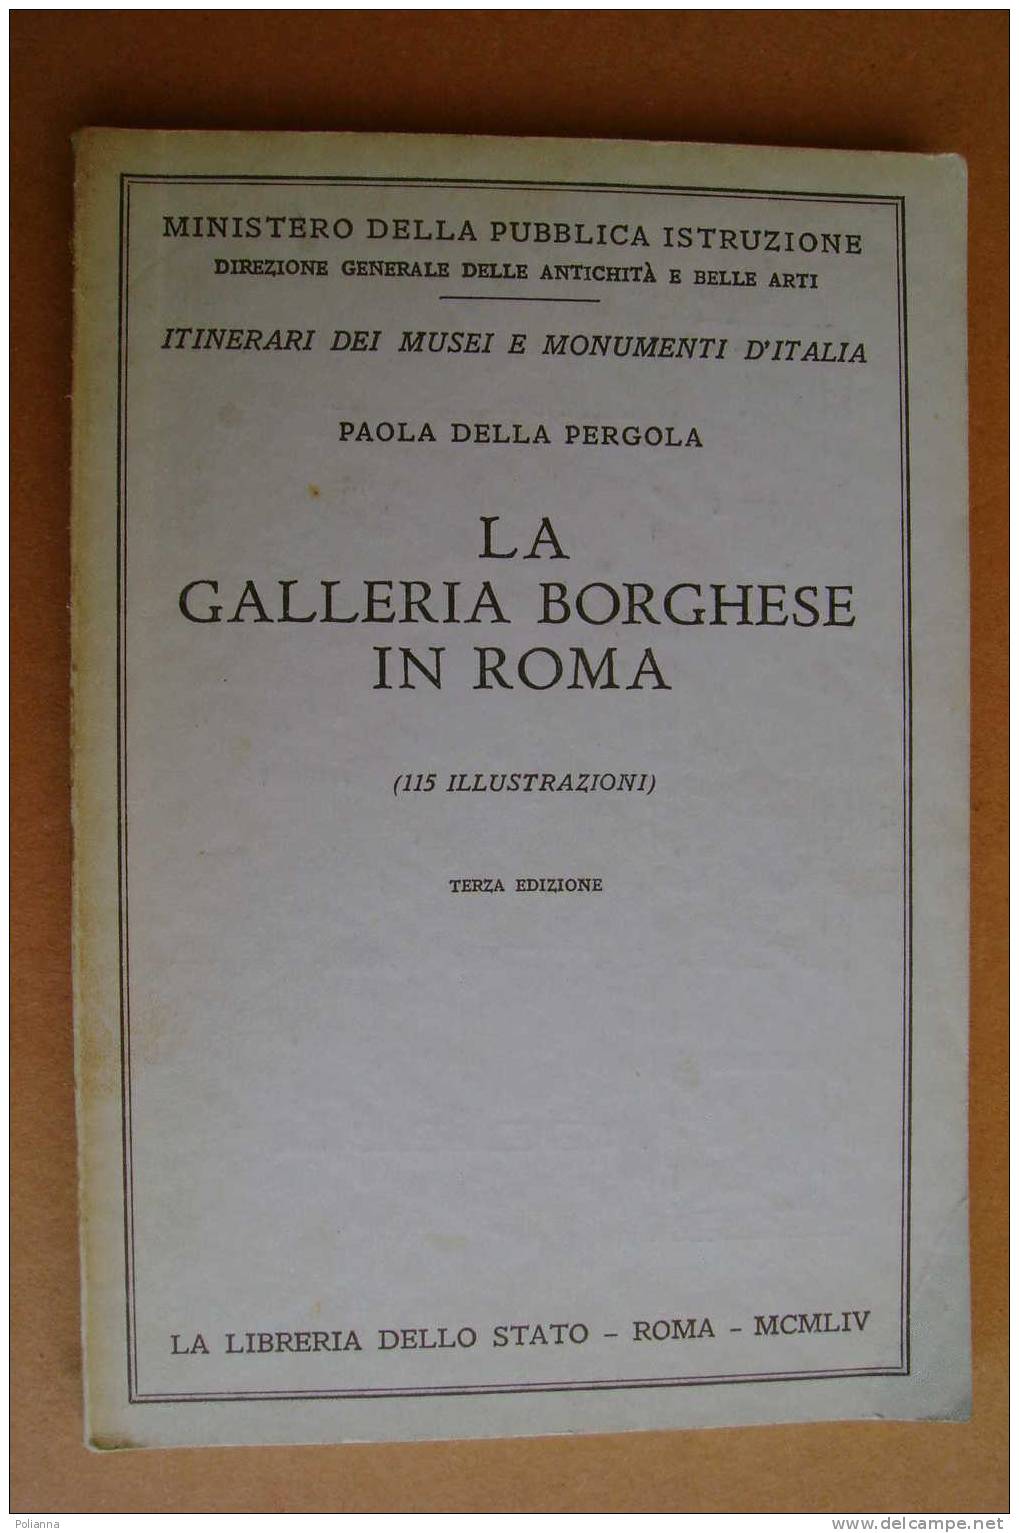 PAO/38 Della Pergola LA GALLERIA BORGHESE IN ROMA Ist.Poligrafico 1954 - Arte, Antigüedades